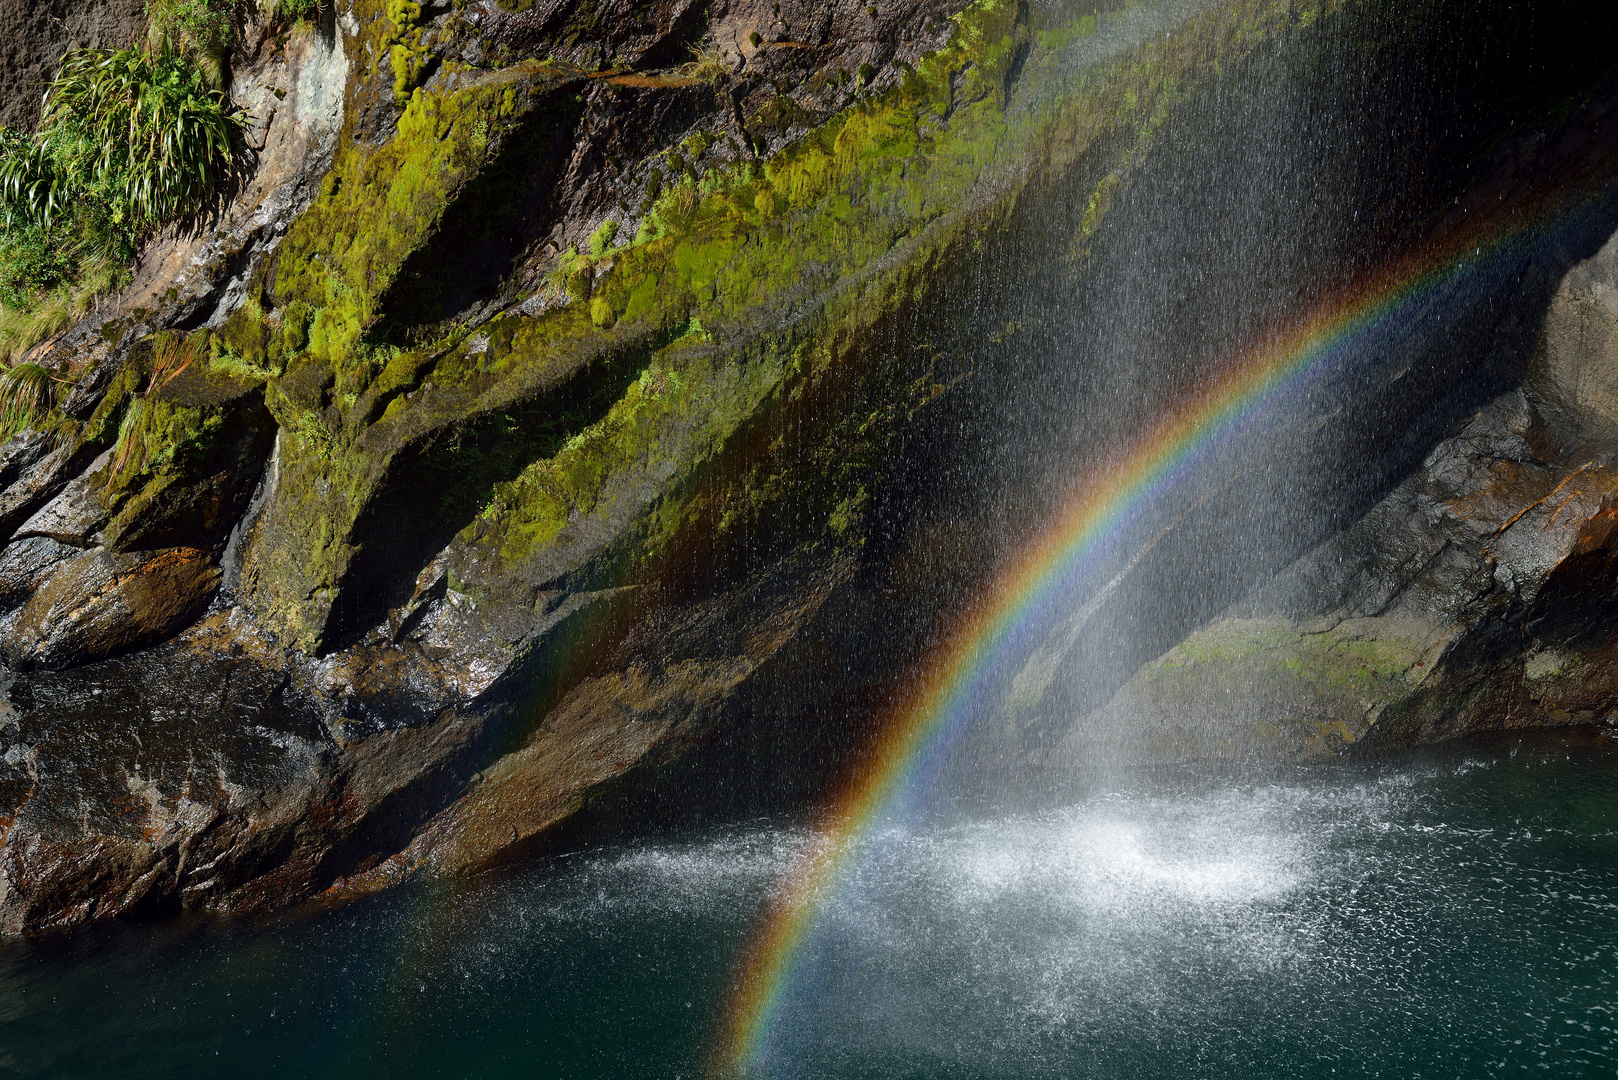 Milfortd Sound: Regenbogen